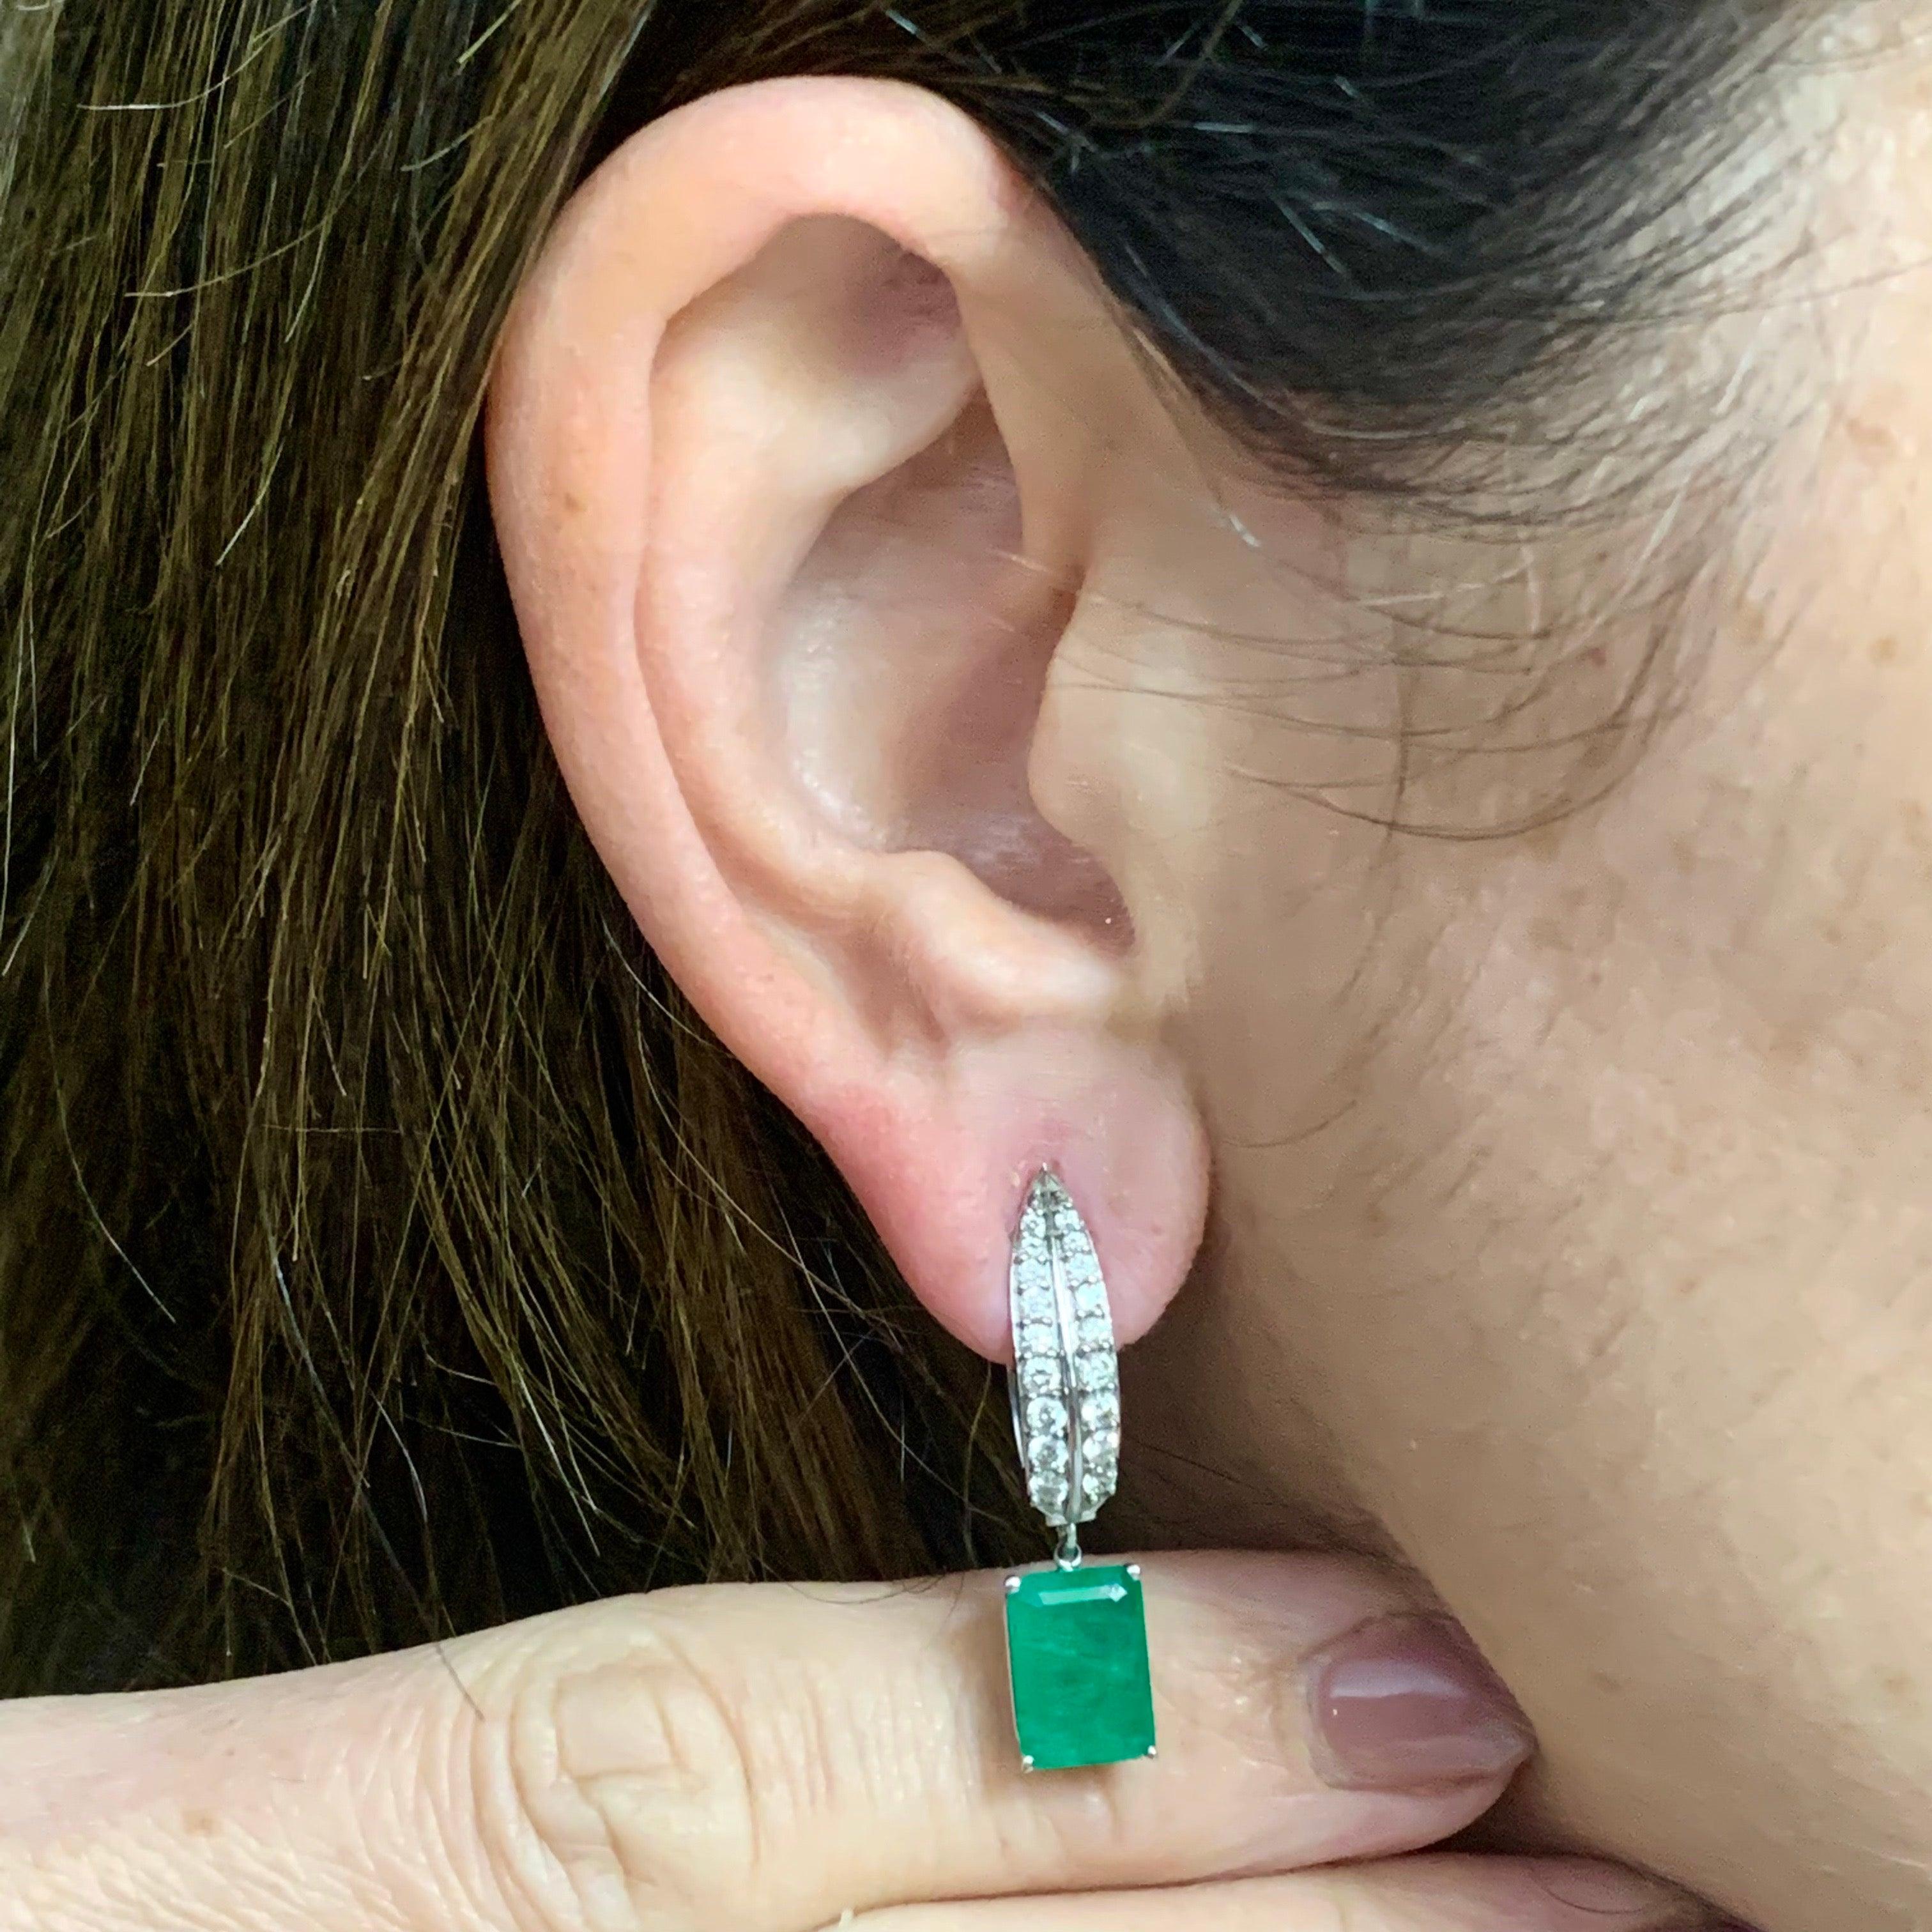 Natürliche fein facettierte Qualität Smaragd Diamant Ohrringe 4,74 TCW 14k Weißgold zertifiziert $7,250 018693

Dies ist ein einzigartiges, maßgeschneidertes, glamouröses Schmuckstück!

Nichts sagt mehr 